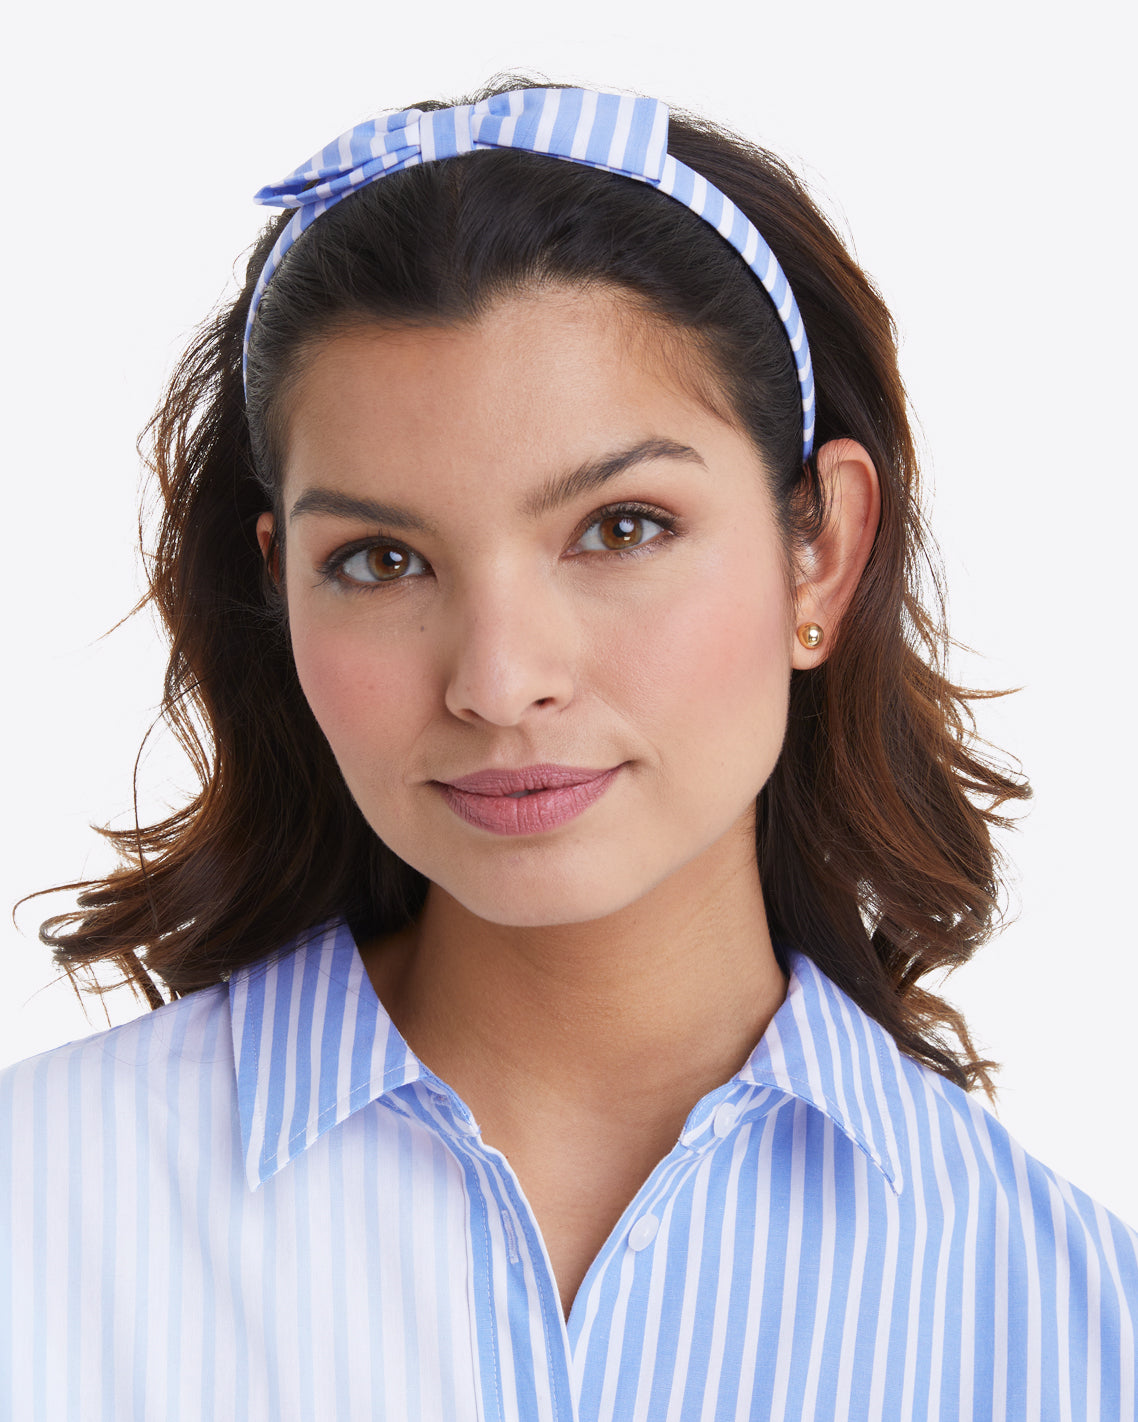 Bow Headband in Blue Stripe